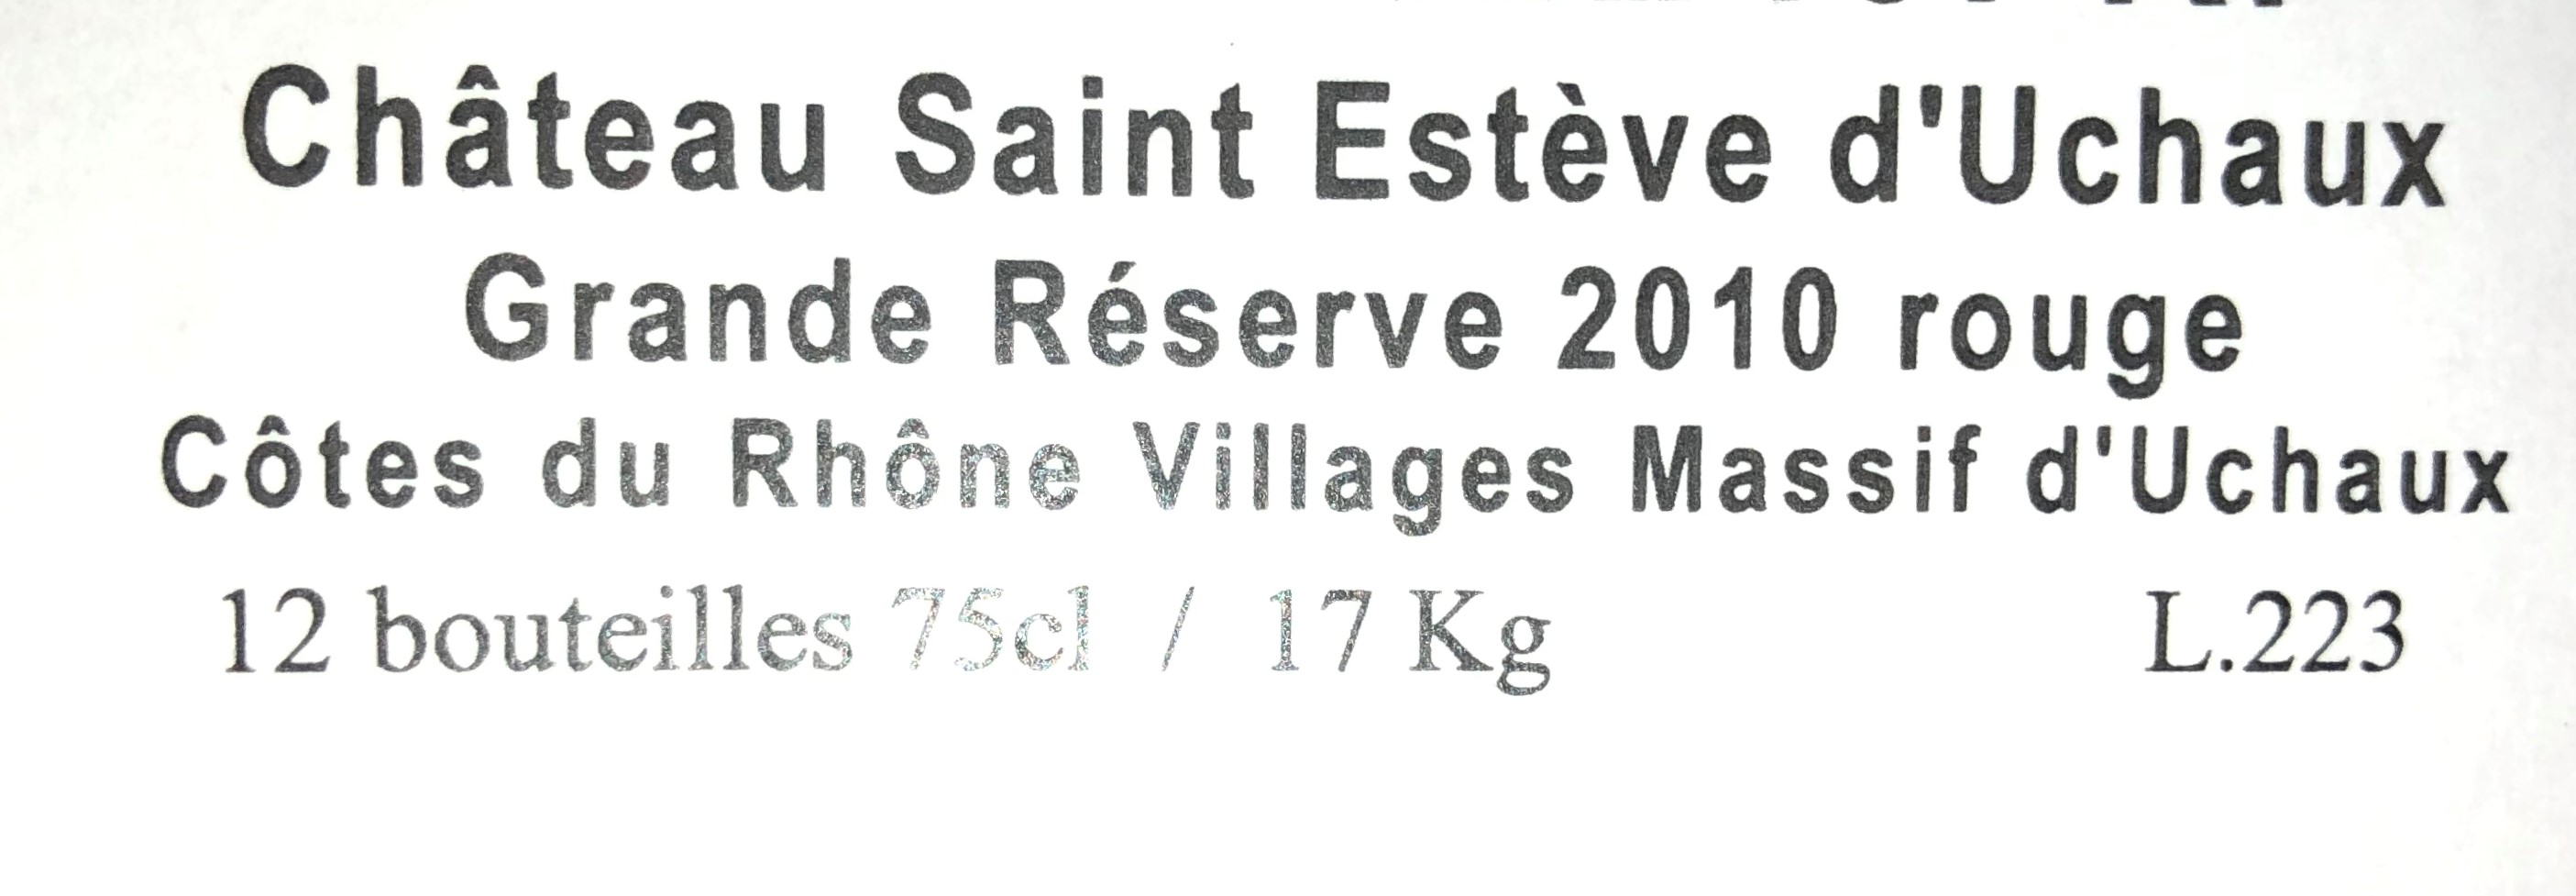 2010 Massif d'Uchaux Cotes du Rhone Villages, Chateau Saint Esteve, Rhone, France, 12 bottles